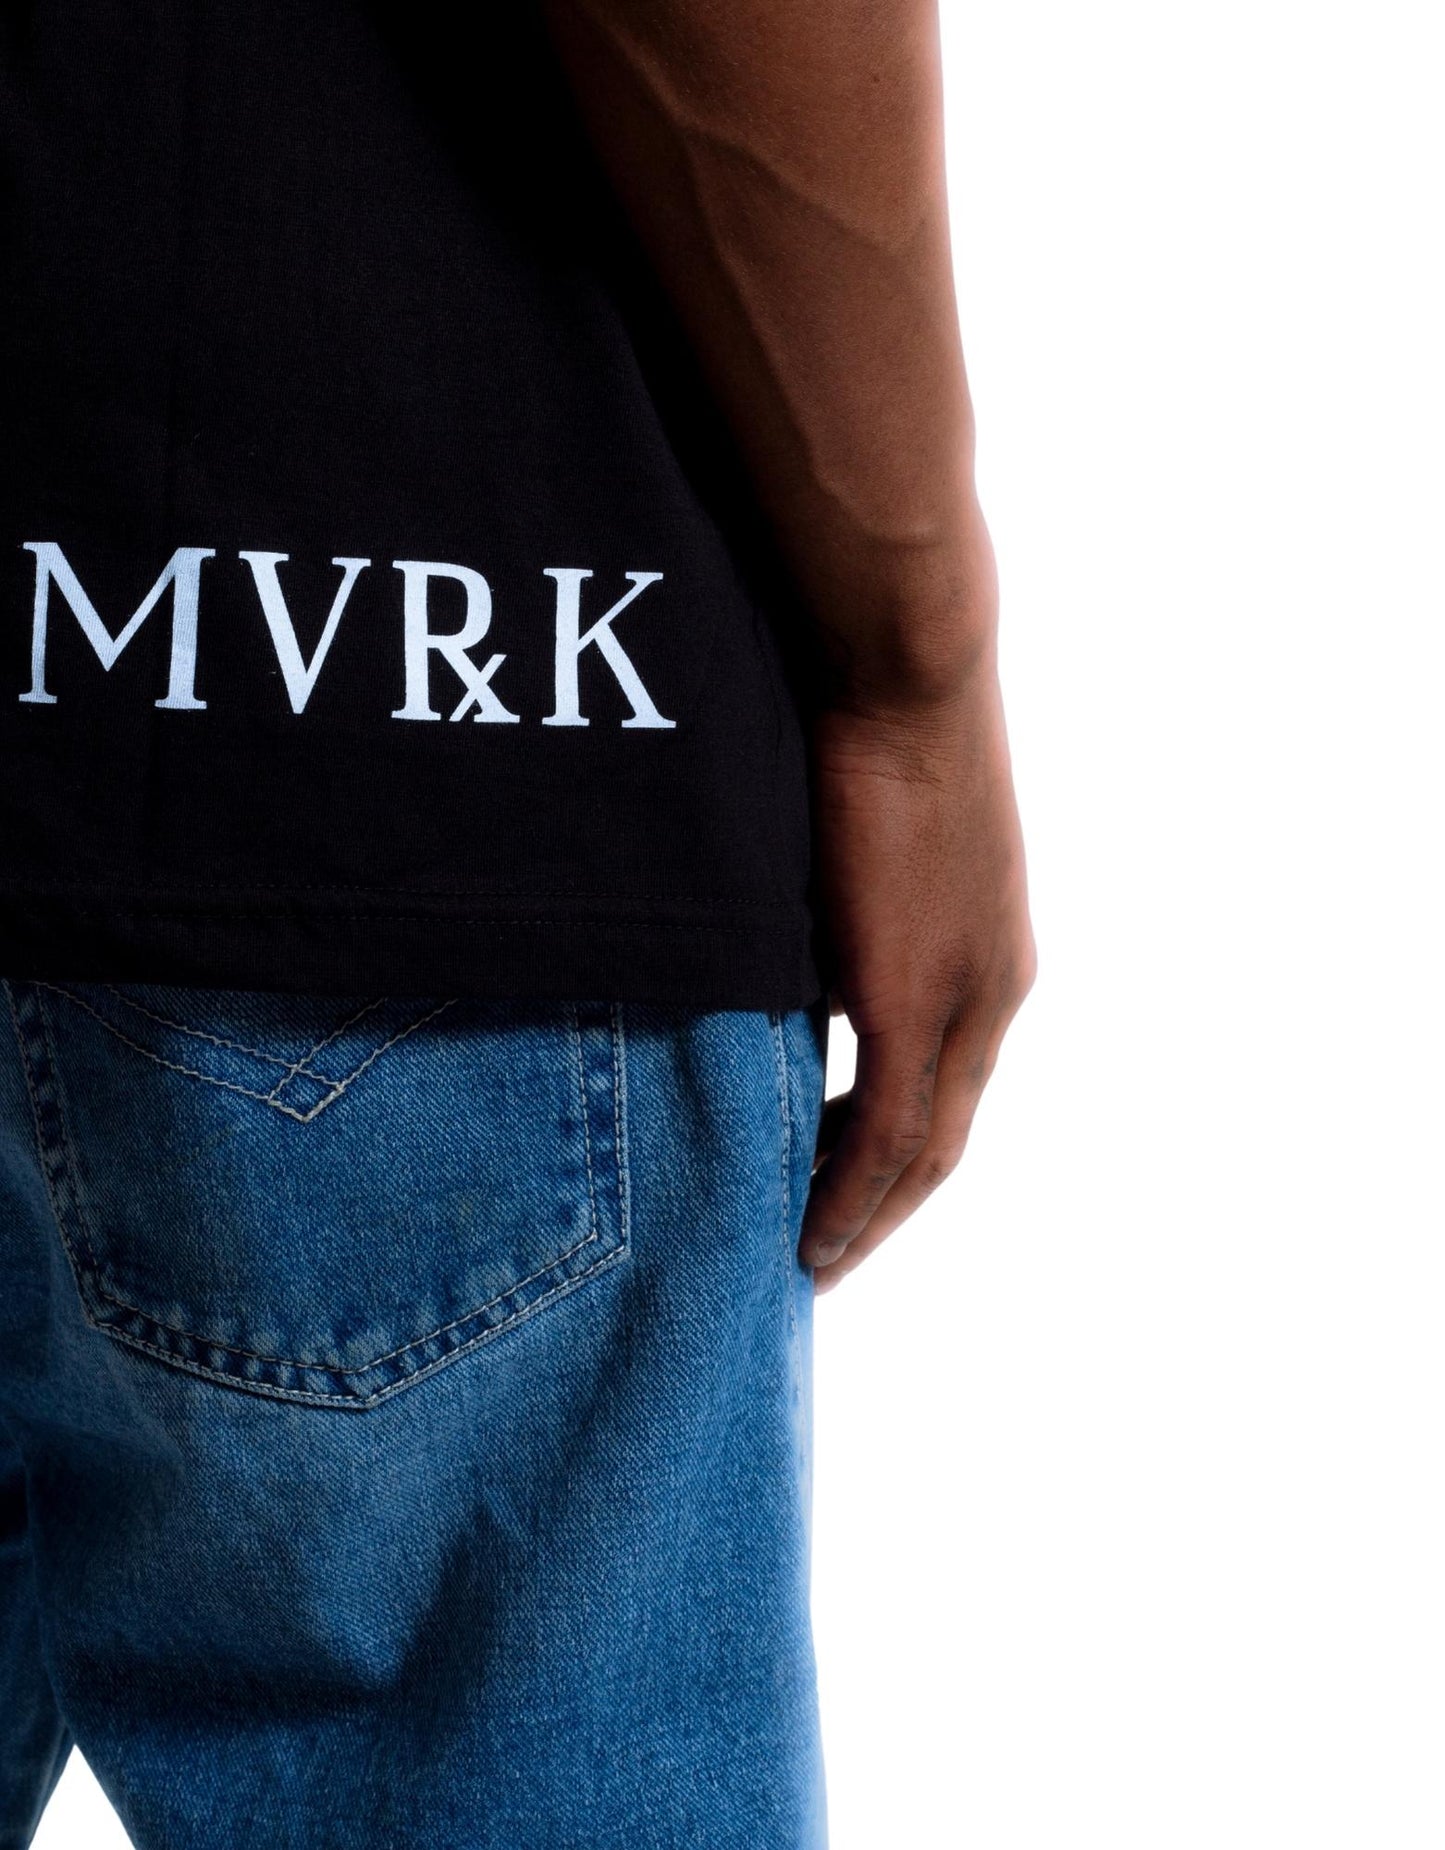 Camiseta Preta MVRK x SABOTAGE 50 Anos